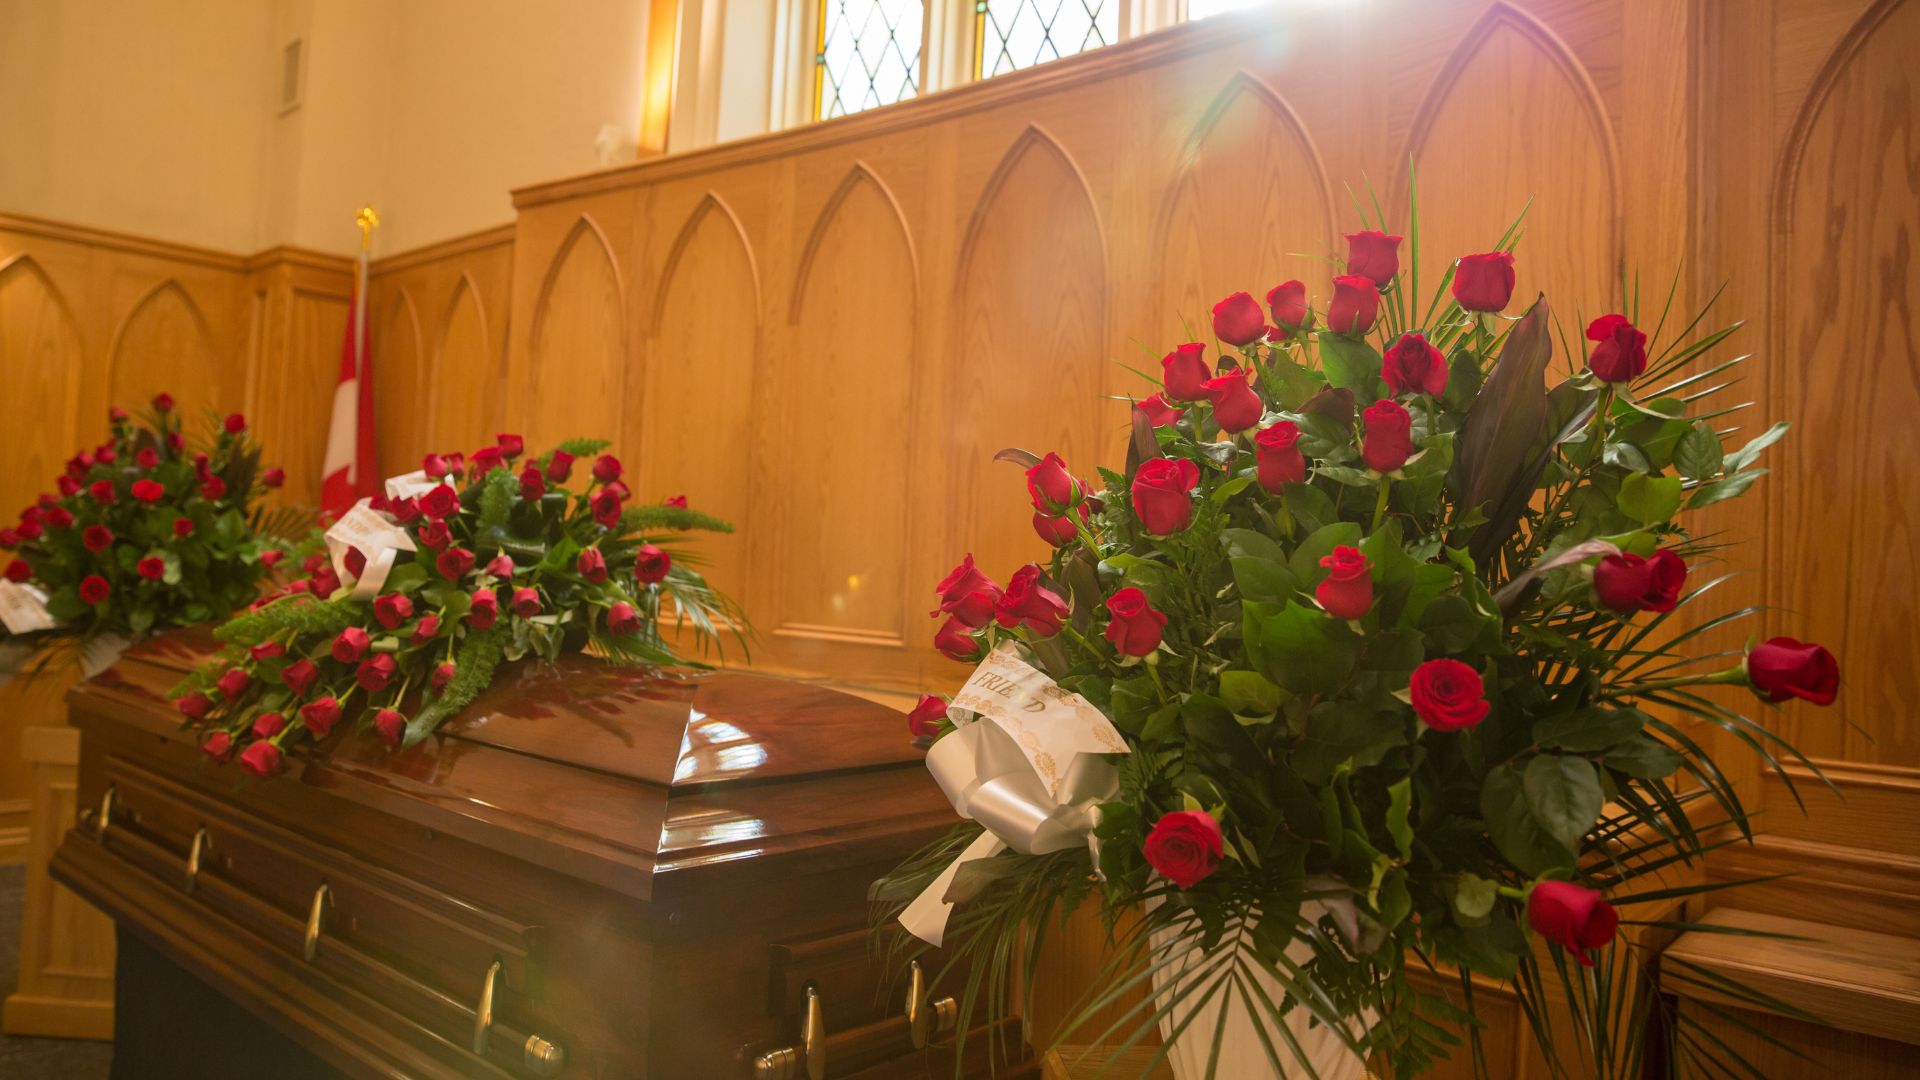 Jakie usługi oferuje na co dzień zakład pogrzebowy? 1